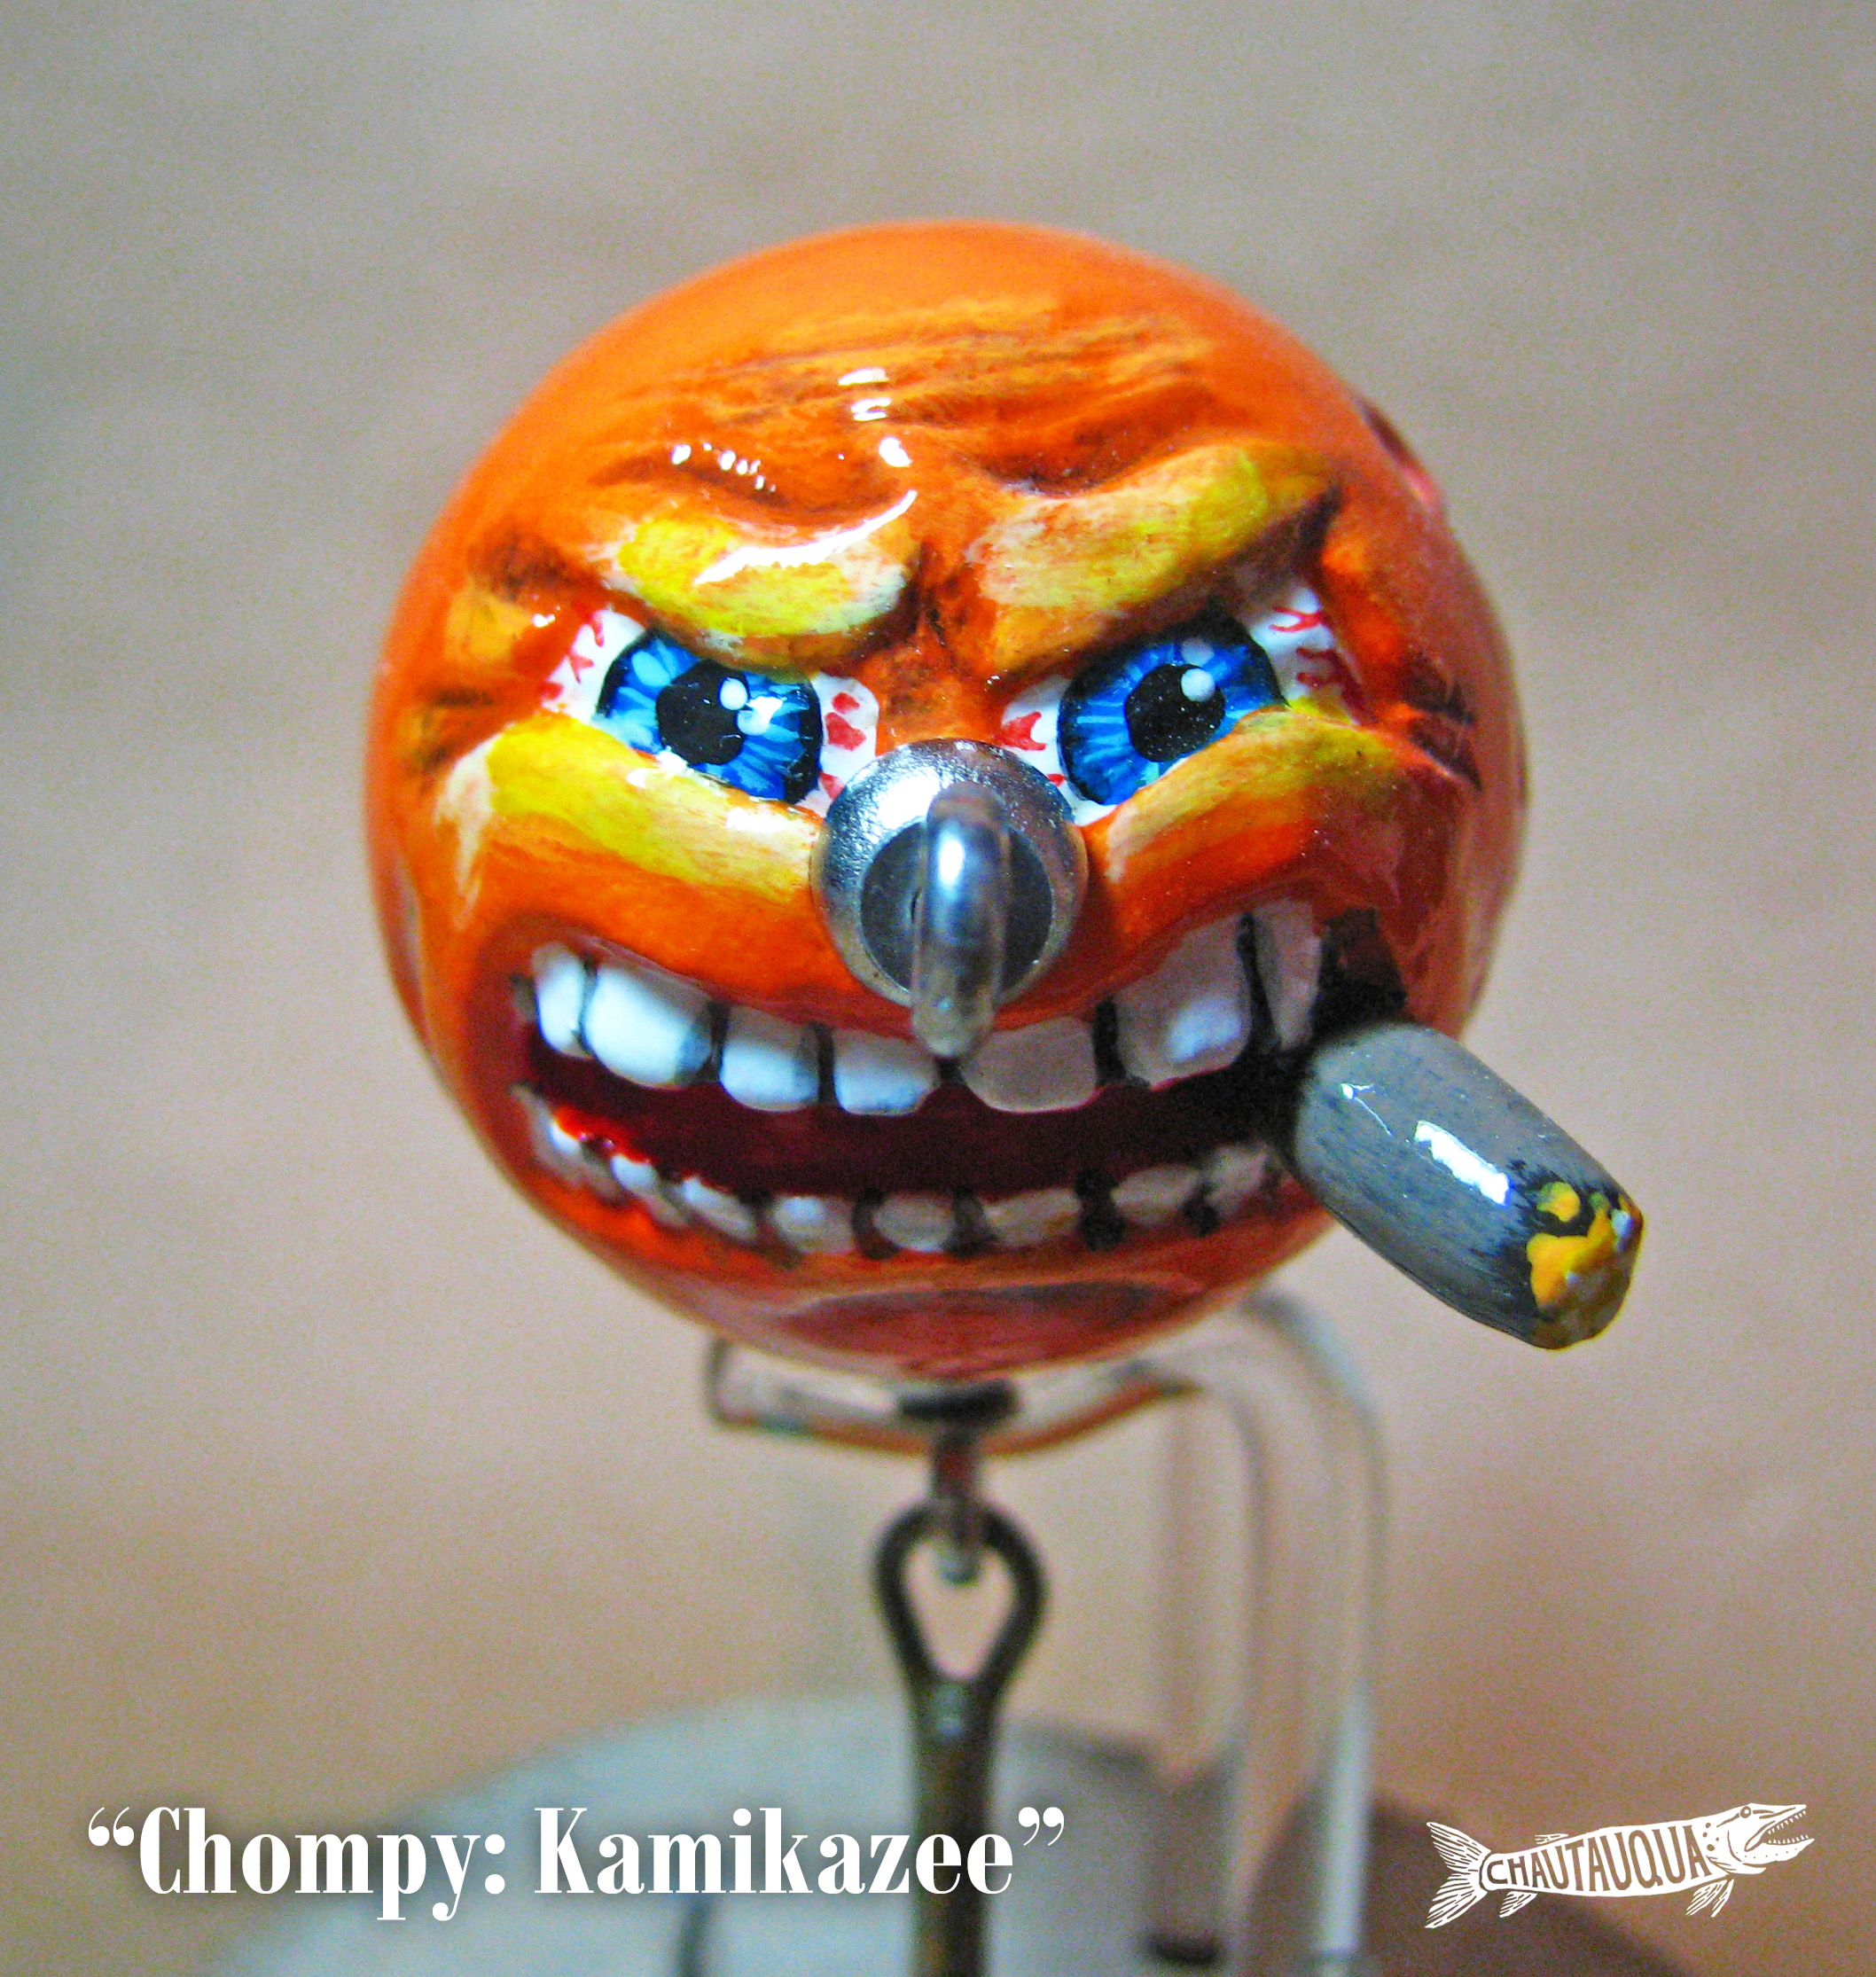 Chompy_Kamikaze1.jpg